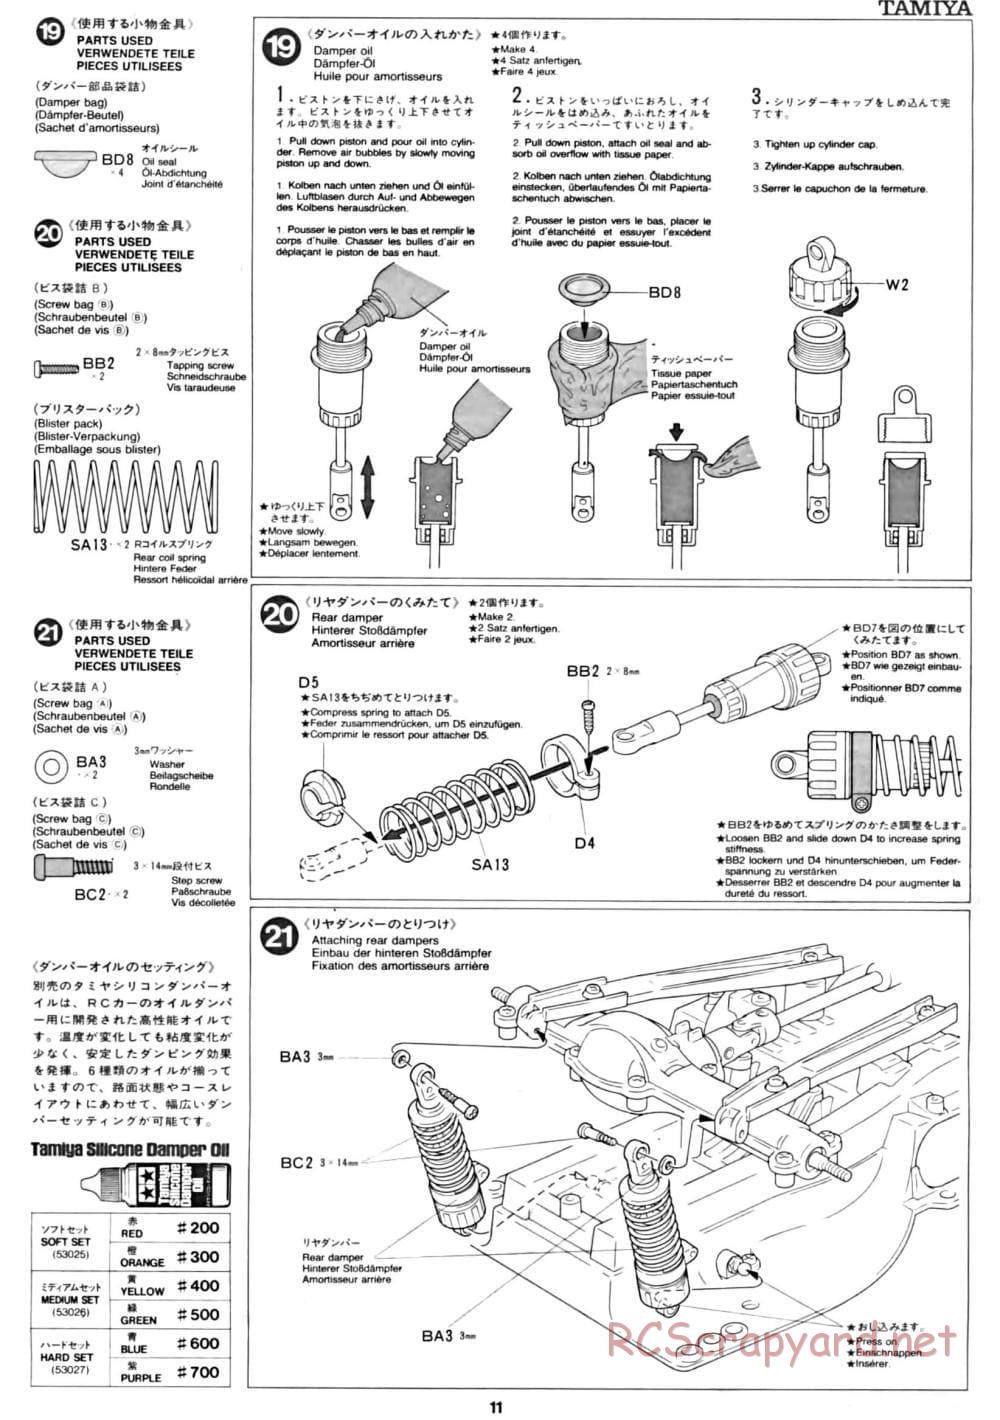 Tamiya - CC-01 Chassis - Manual - Page 11